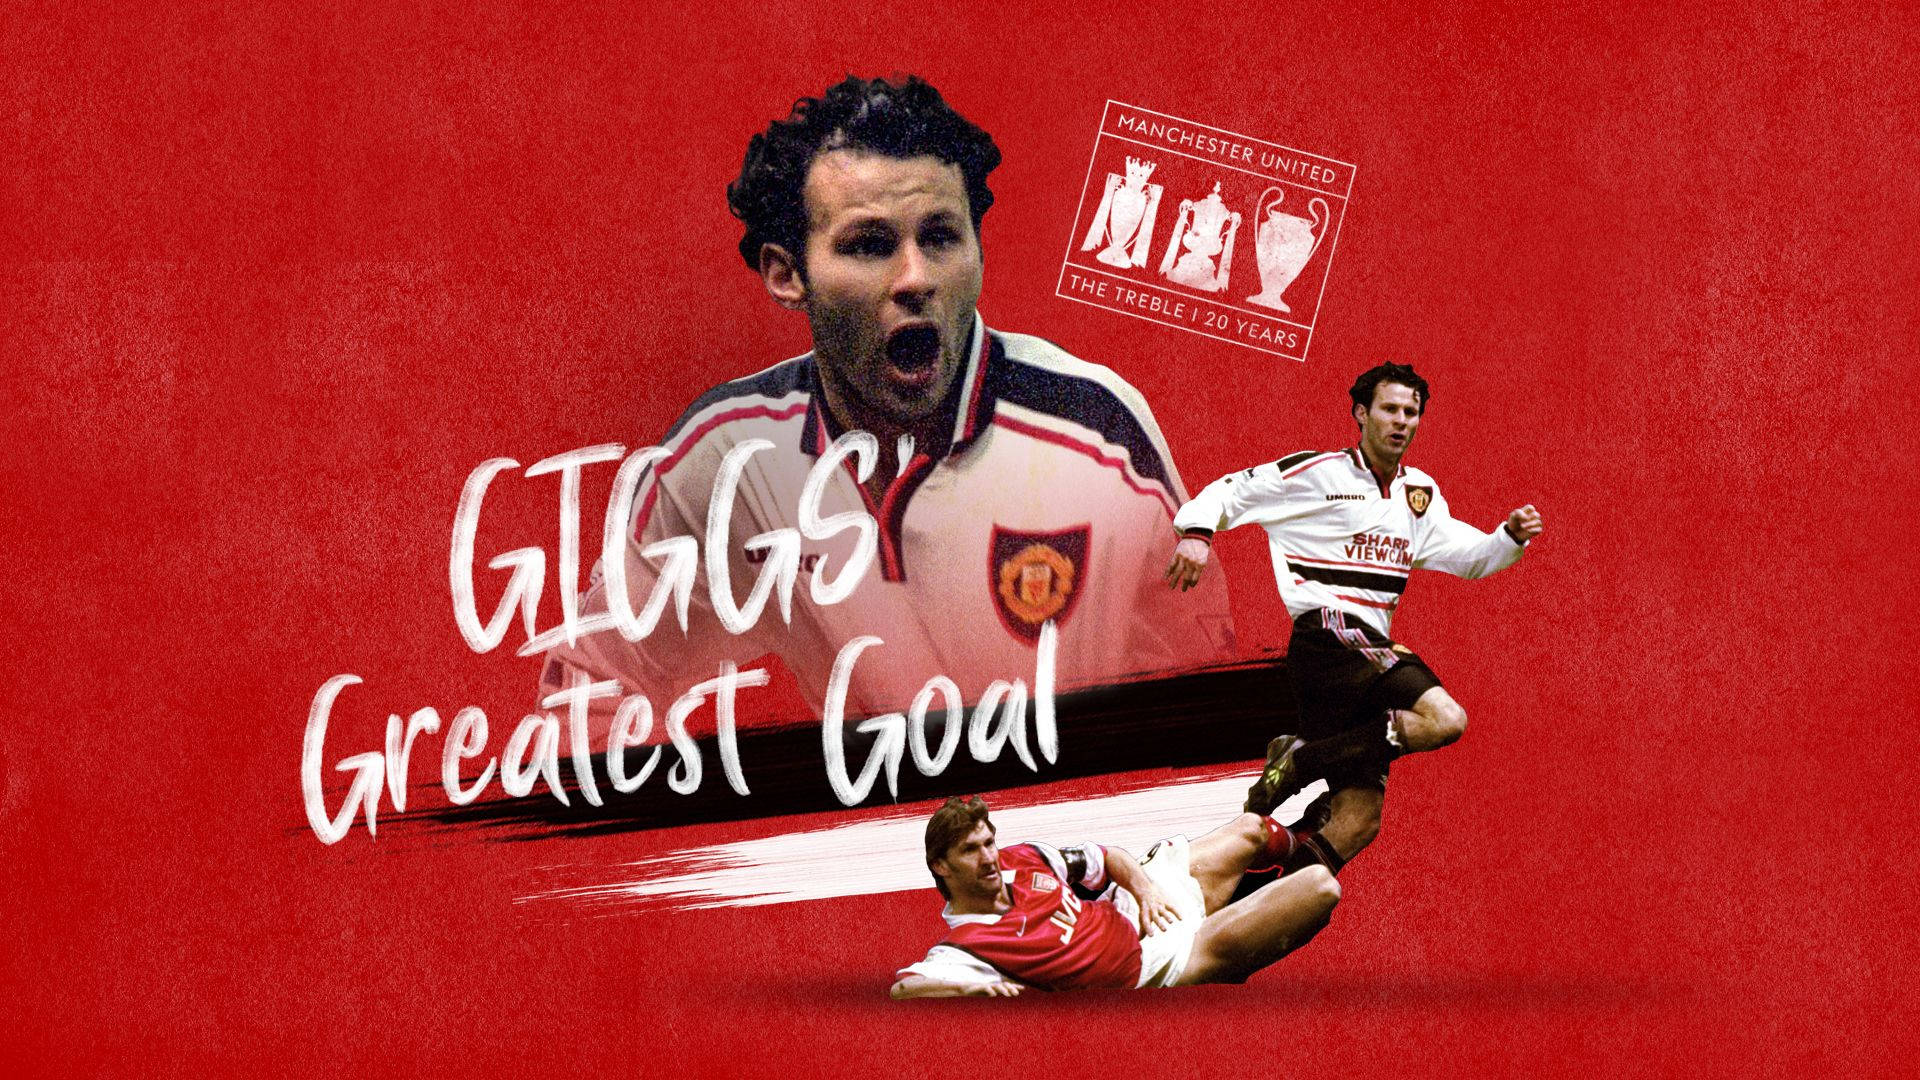 Ryan Giggs Greatest Goal Dekoration Væg Tapet: Tag dig plads i fodboldhistorien med dette Ryan Giggs tapet af Englands største spiller. Wallpaper